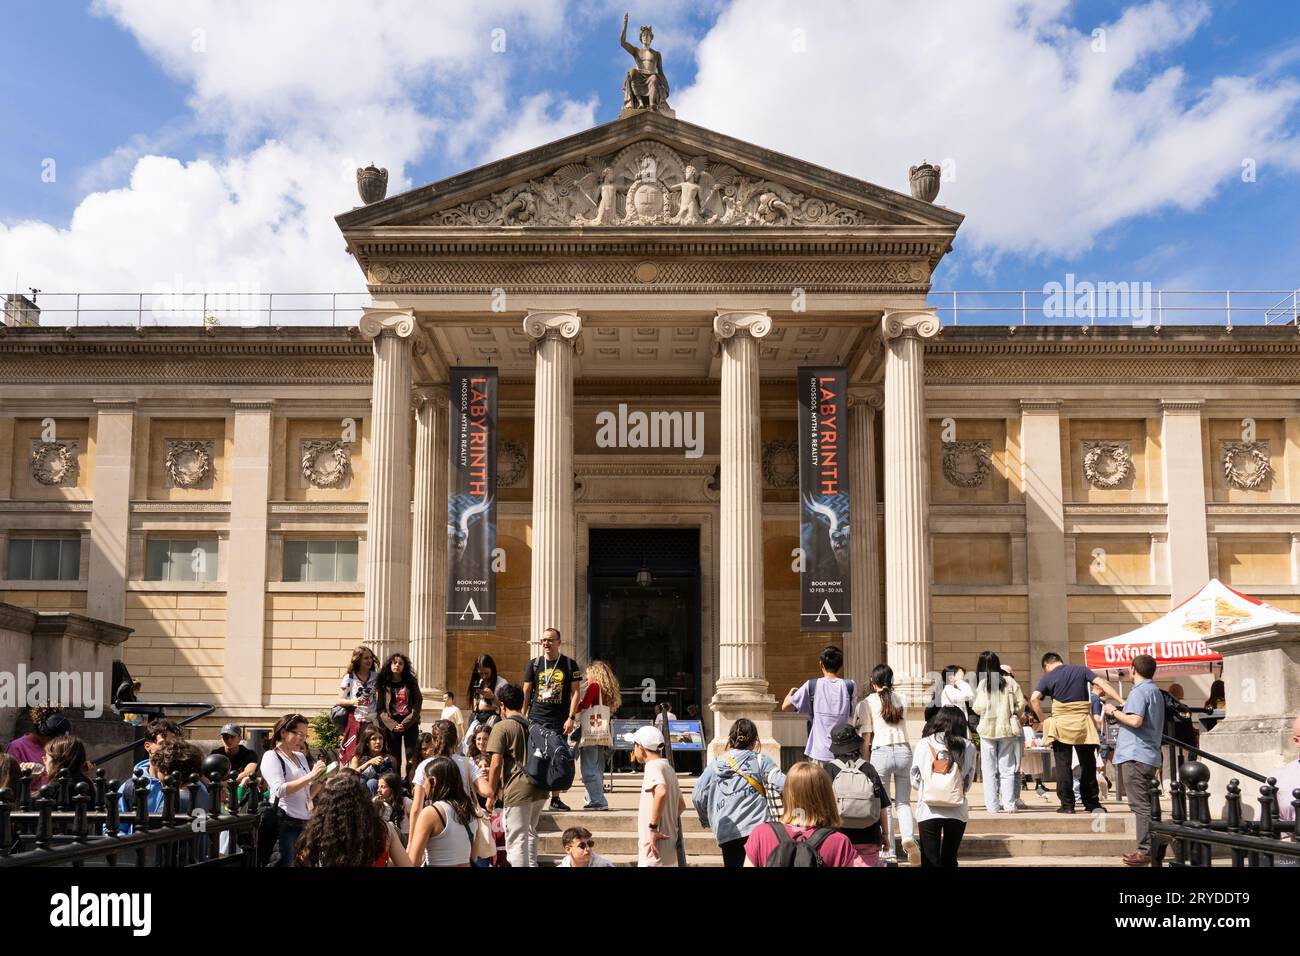 La facciata anteriore dell'Oxford Ashmolean Museum. L'Ashmolean è il museo d'arte e archeologia dell'Università di Oxford, fondato nel 1683. Inghilterra Foto Stock